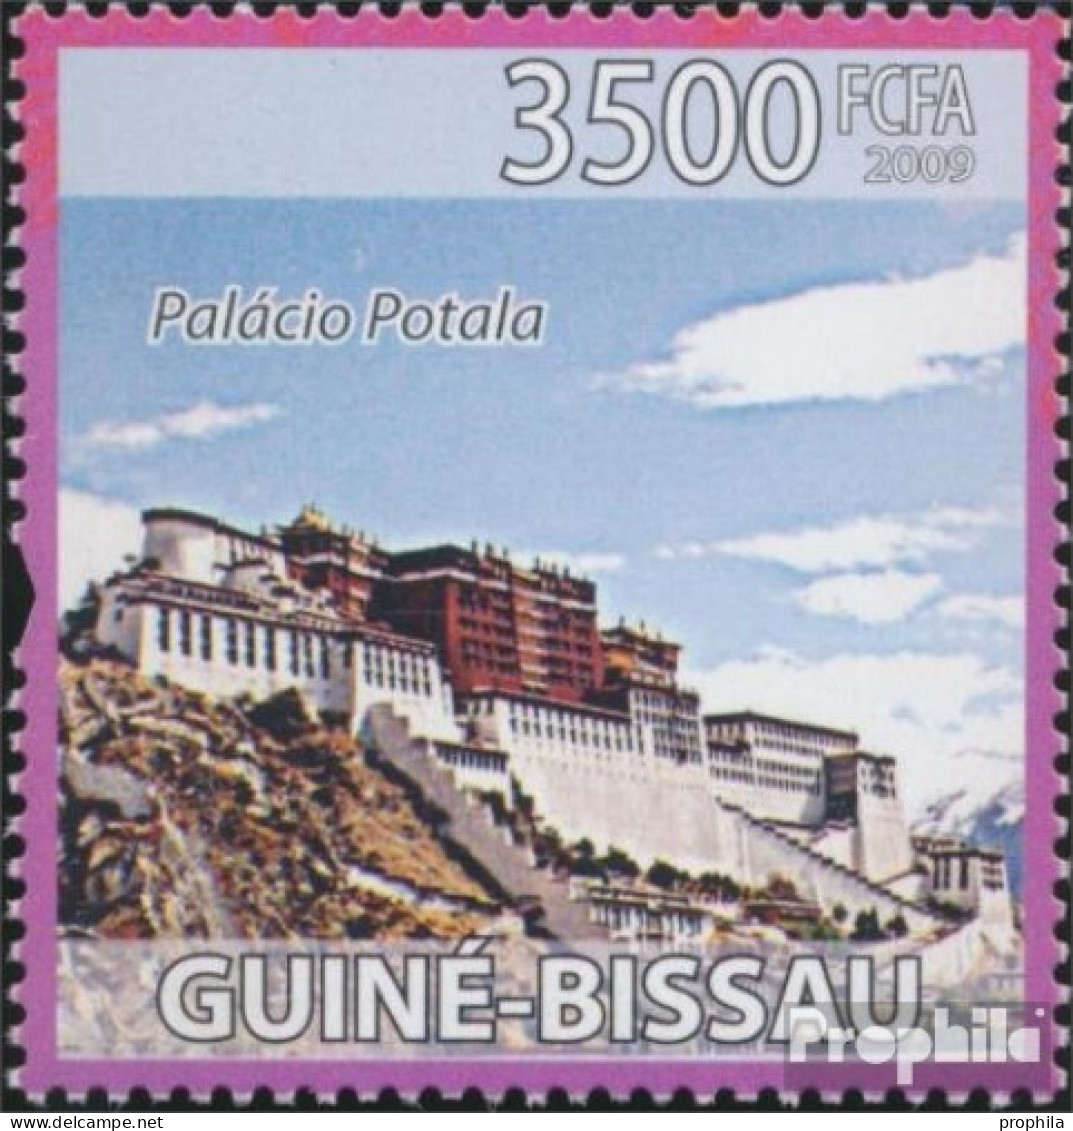 Guinea-Bissau 4216 (kompl. Ausgabe) Postfrisch 2009 Chinesische Kultur - Guinea-Bissau